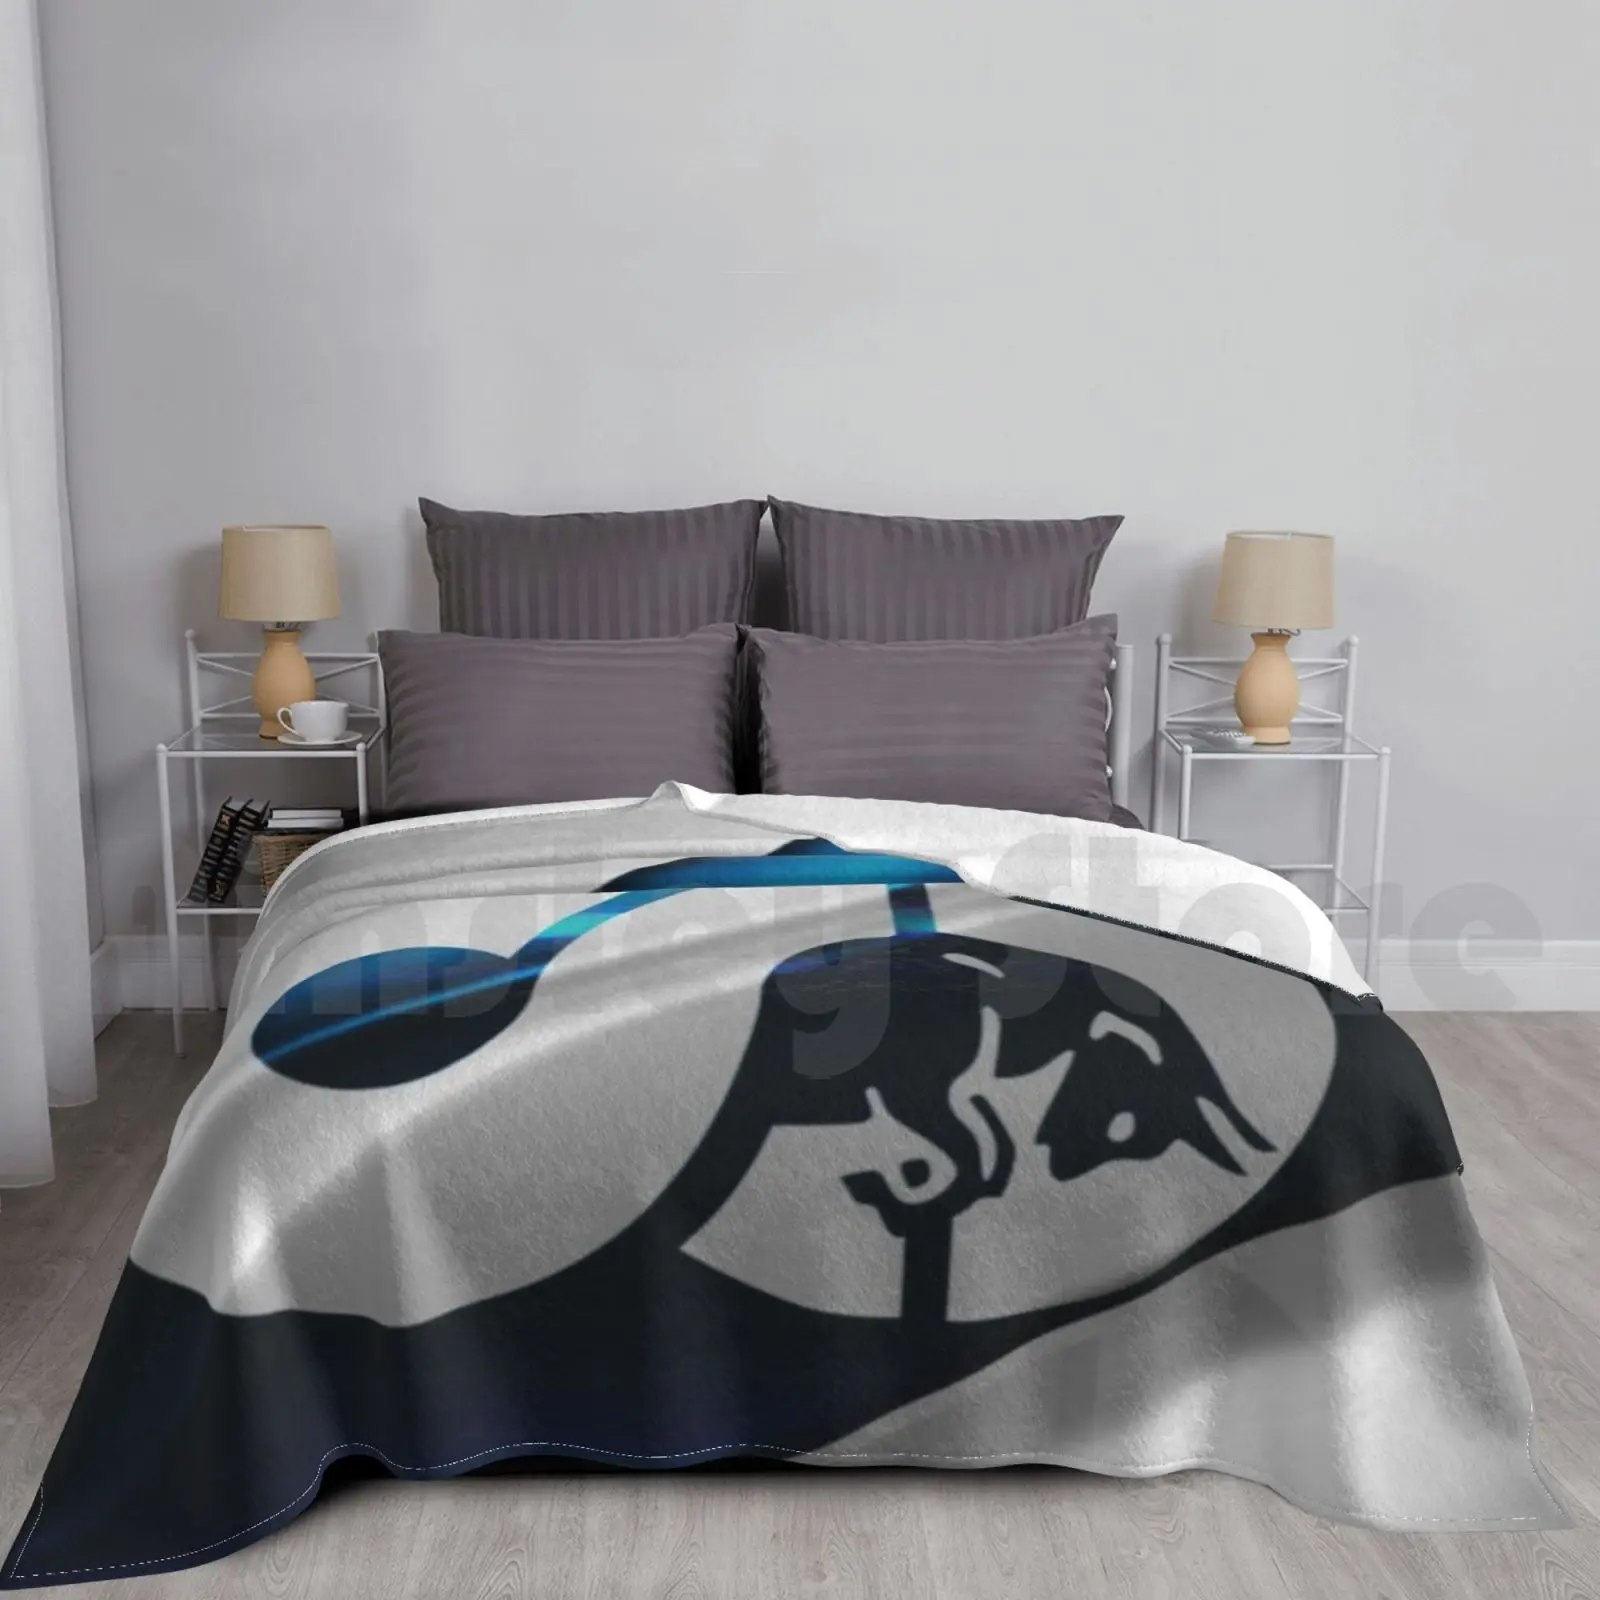 

Новинка, Гоночное одеяло Scuderia Alpha Tauri, супермягкое, теплосветильник, легкое, тонкое